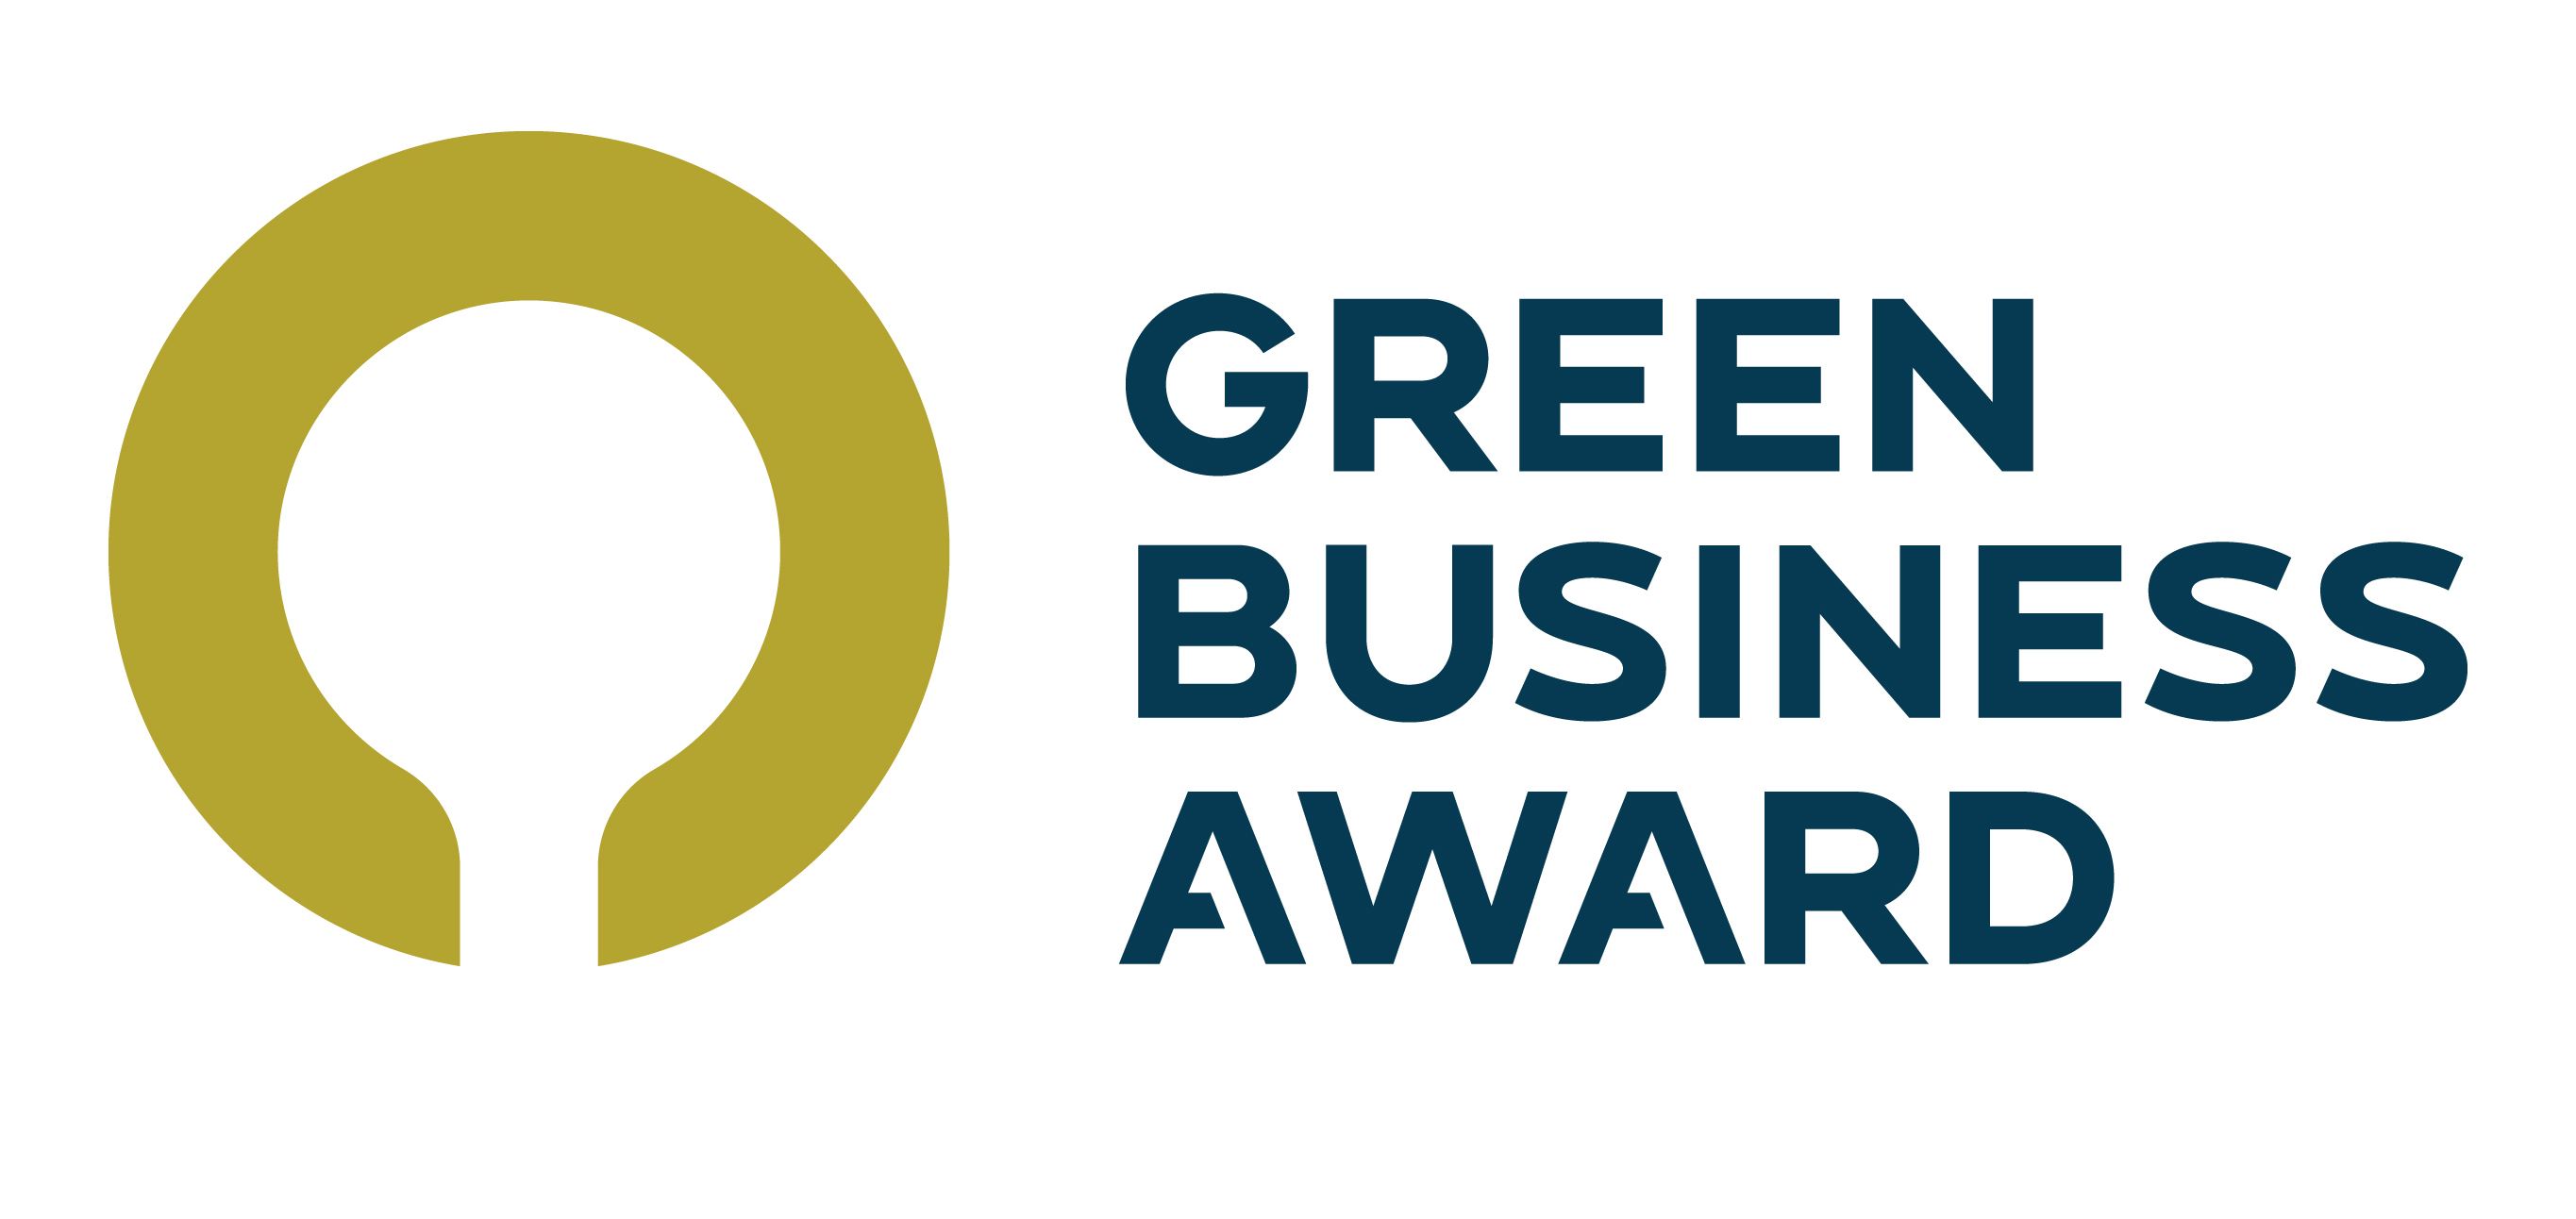 Voici les entreprises nominées au «Green Business Award»